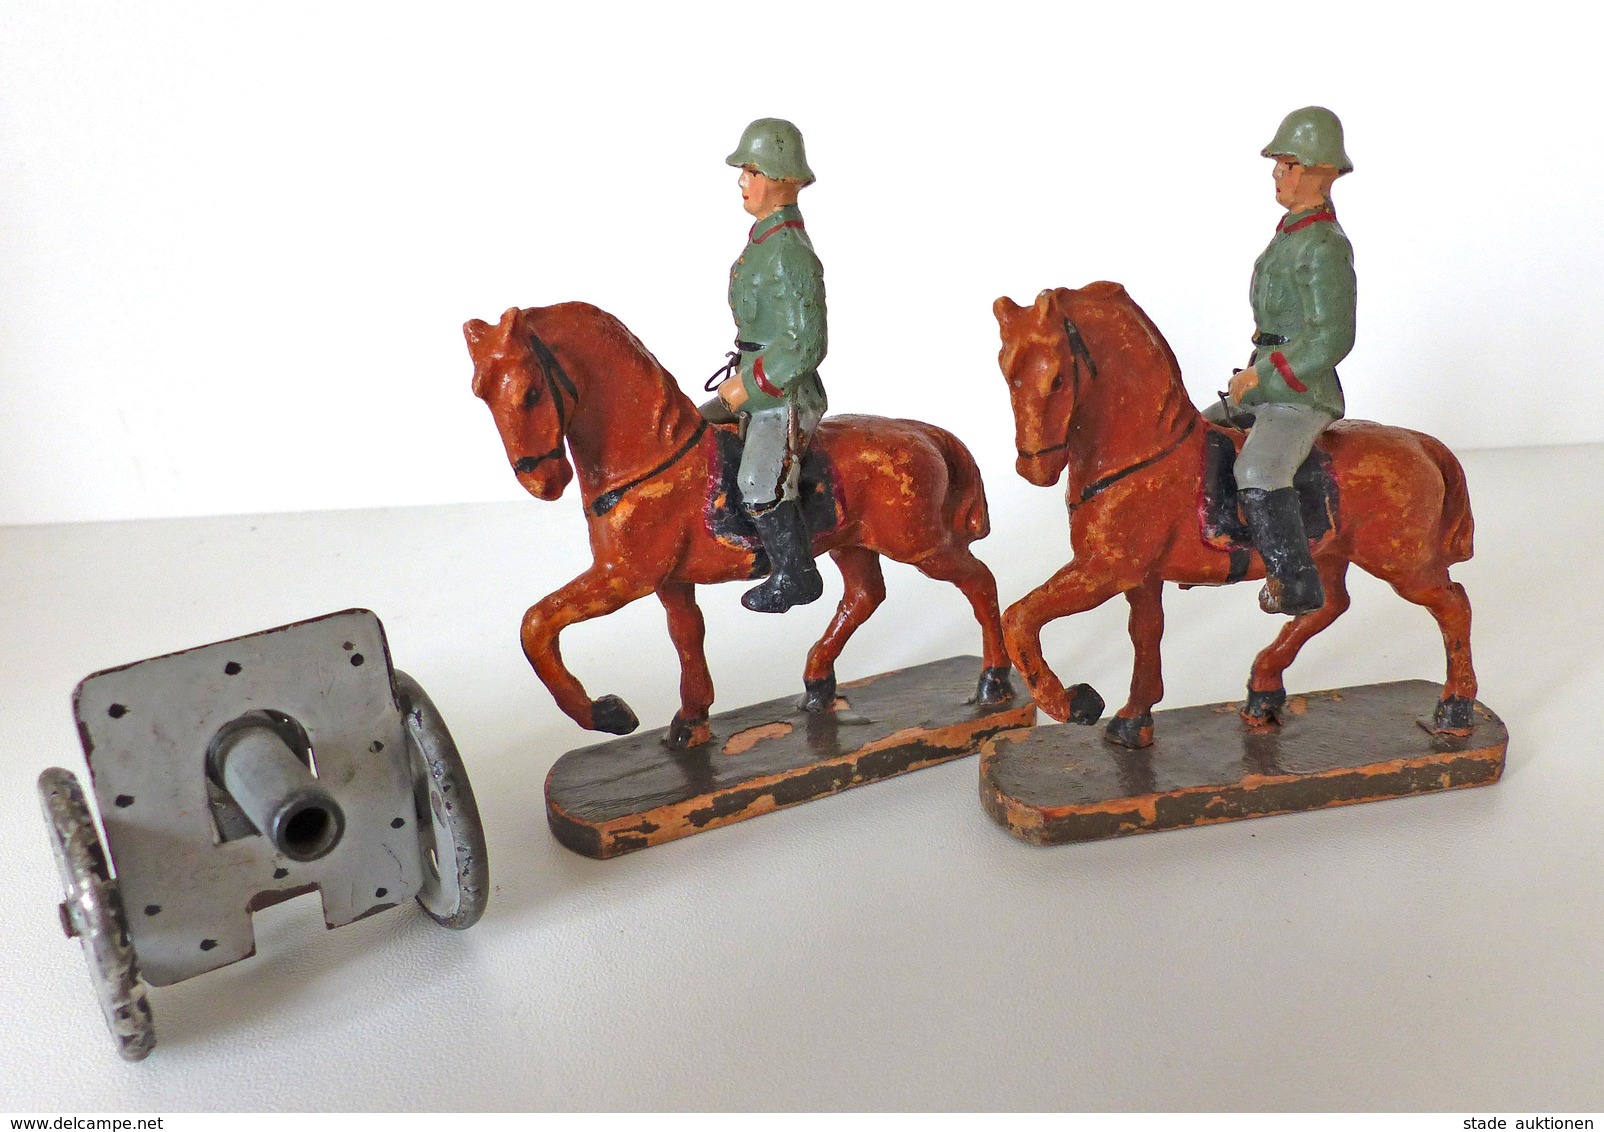 Zwischenkriegszeit Wehrmacht Lineol Figuren Kavalerie 2 Reiter 1 Geschütz Bespielt I-II (altersbedingte Gebrauchsspuren) - Geschichte